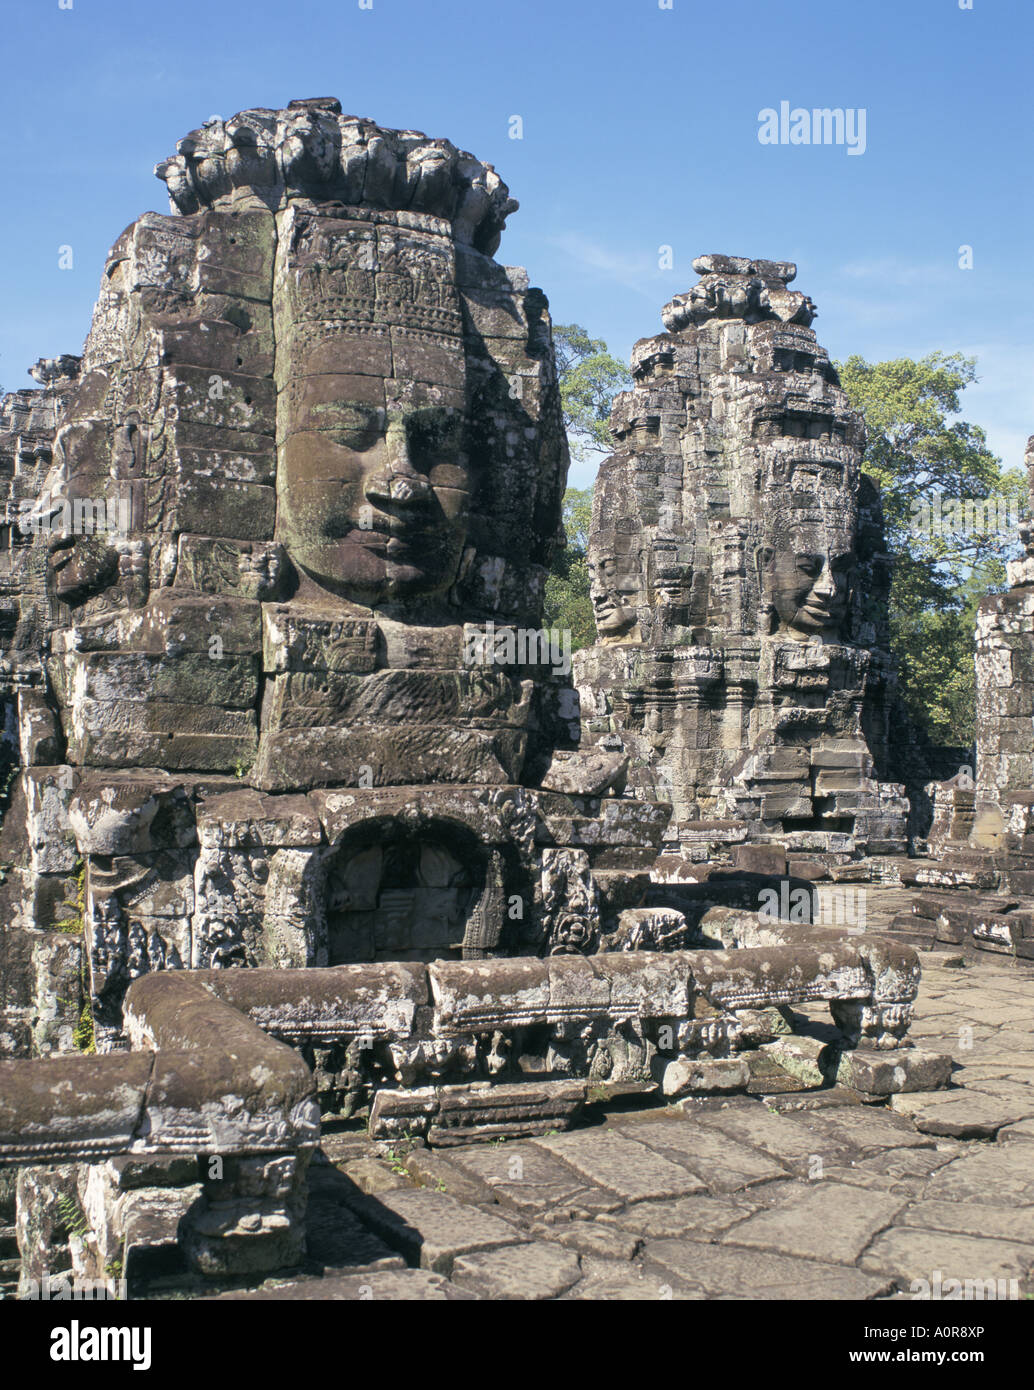 Bayon Angkor Sito Patrimonio Mondiale dell'UNESCO Siem Reap Cambogia Indocina Asia del sud-est asiatico Foto Stock